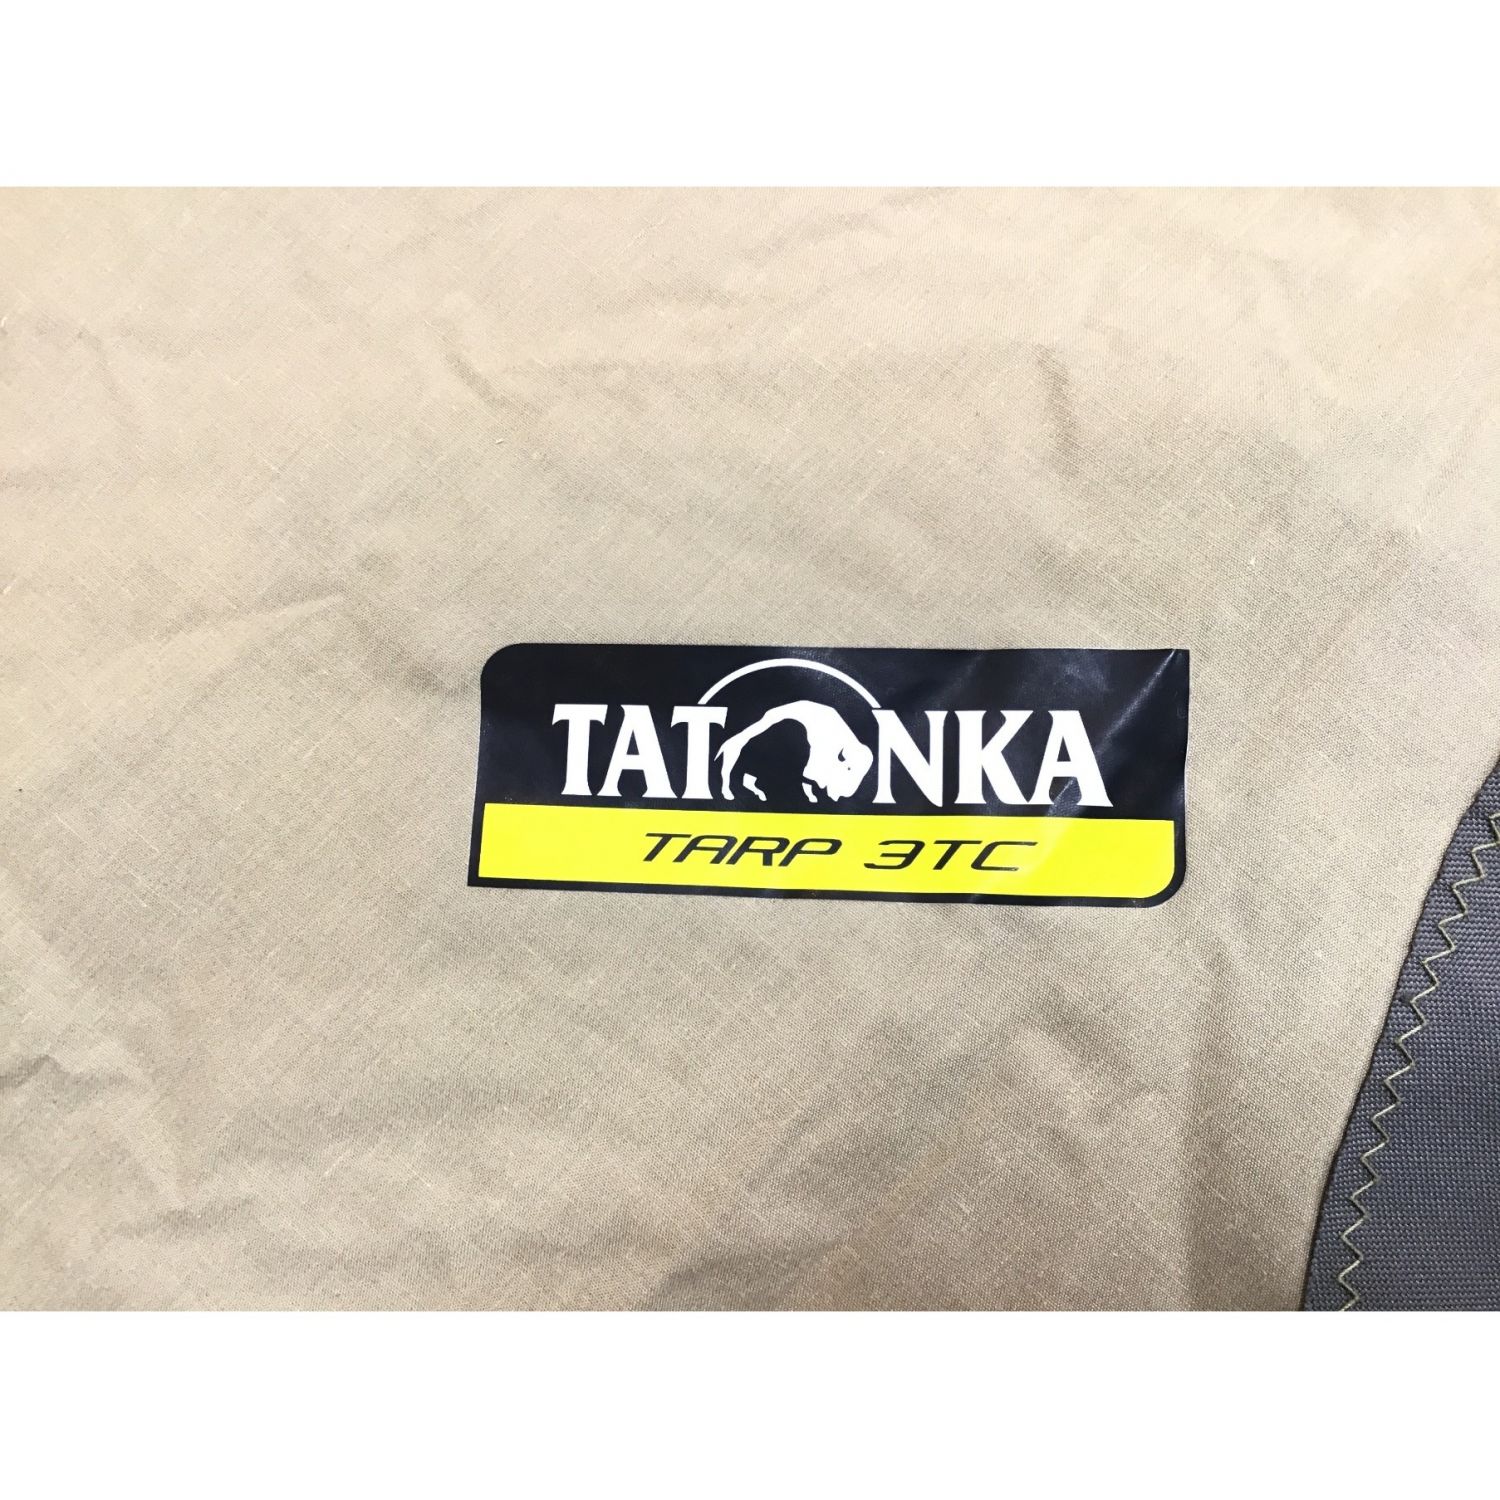 TATONKA タトンカタープ3TC ヘキサ - アウトドア